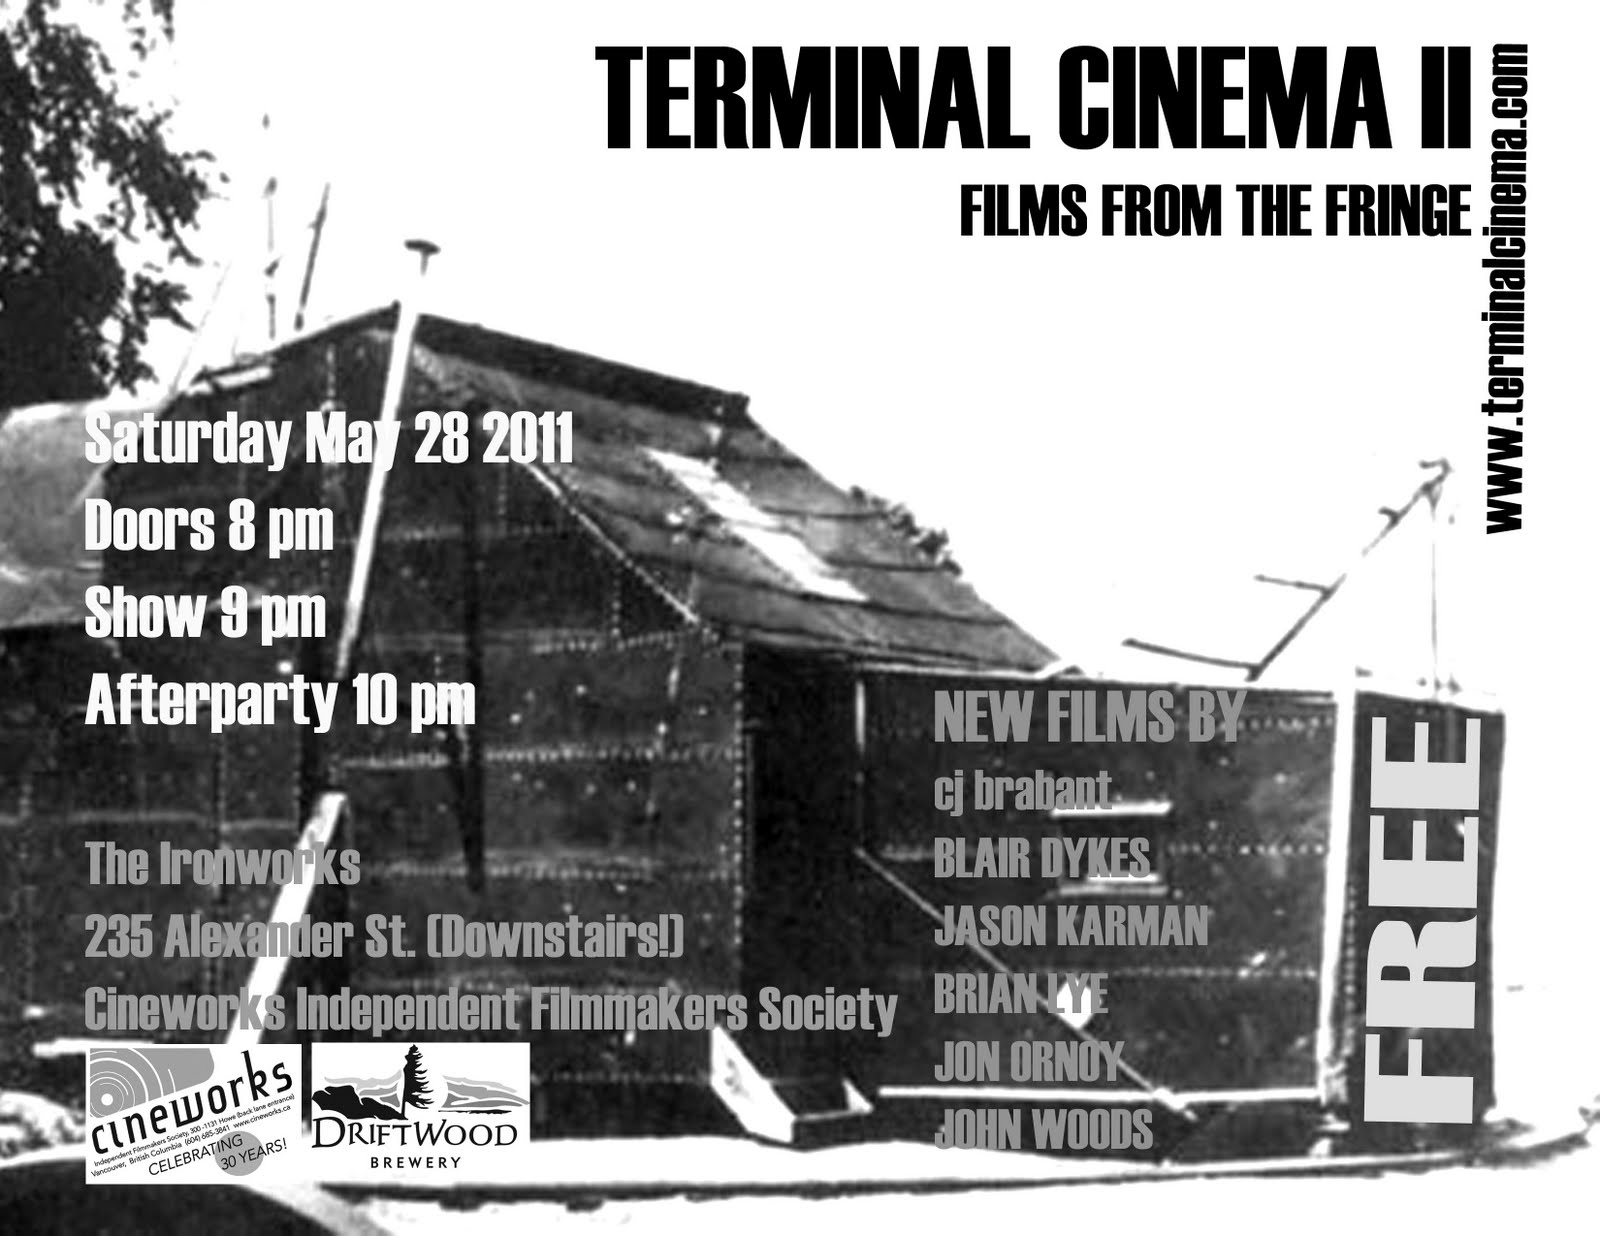 http://2.bp.blogspot.com/-zoWwZf1Usmc/TdBtw2HggGI/AAAAAAAAABA/gm-xd_LYX_c/s1600/Terminal+Cinema+II+Poster+2.jpg